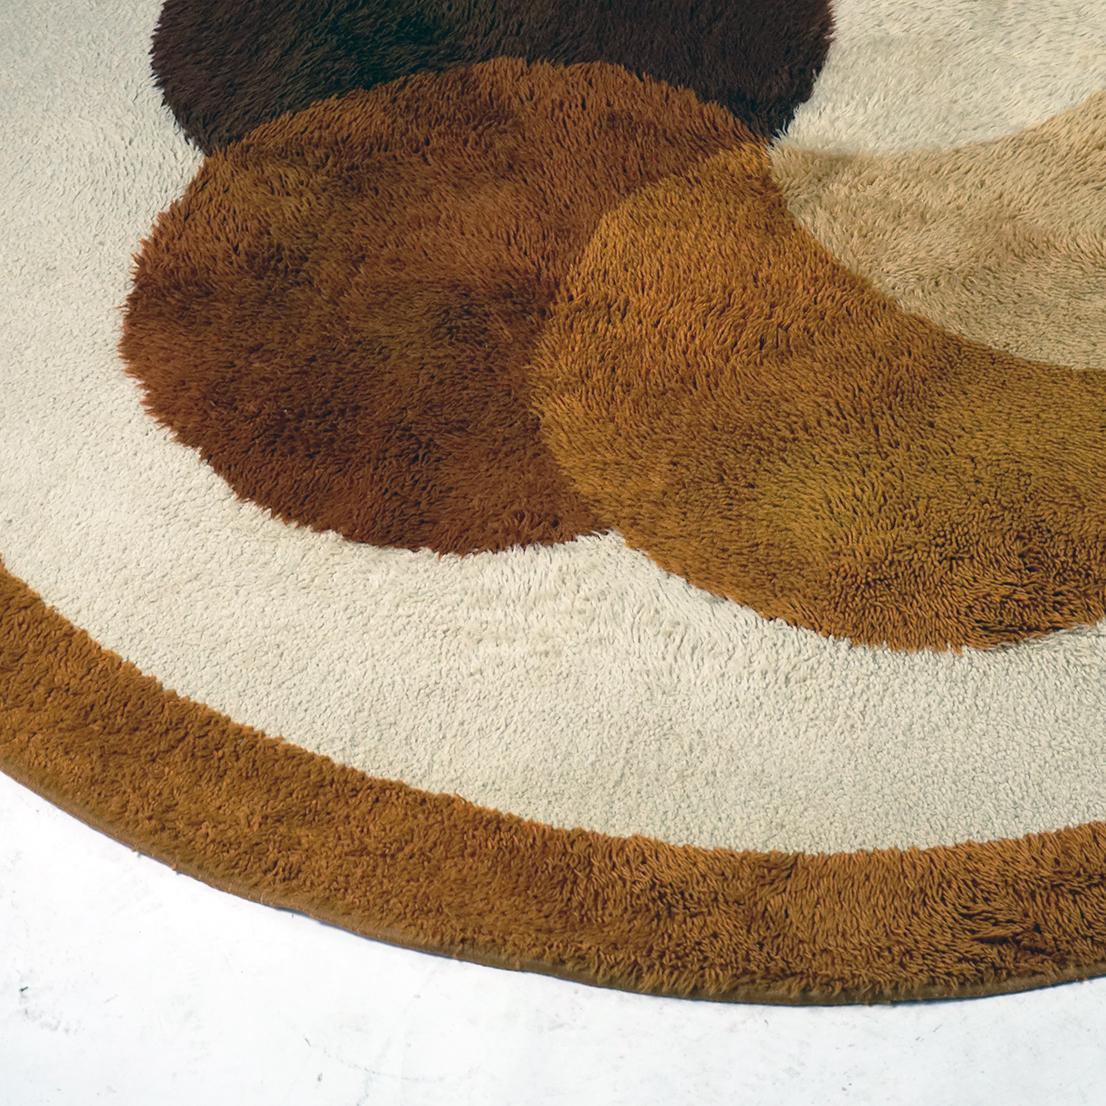 Ce tapis circulaire en laine marron, beige et jaune de l'âge de l'espace a été conçu et produit aux Pays-Bas par Desso dans les années 1970.
Tapis aux couleurs charmantes et aux motifs floraux très décoratifs en très bon état d'origine sans